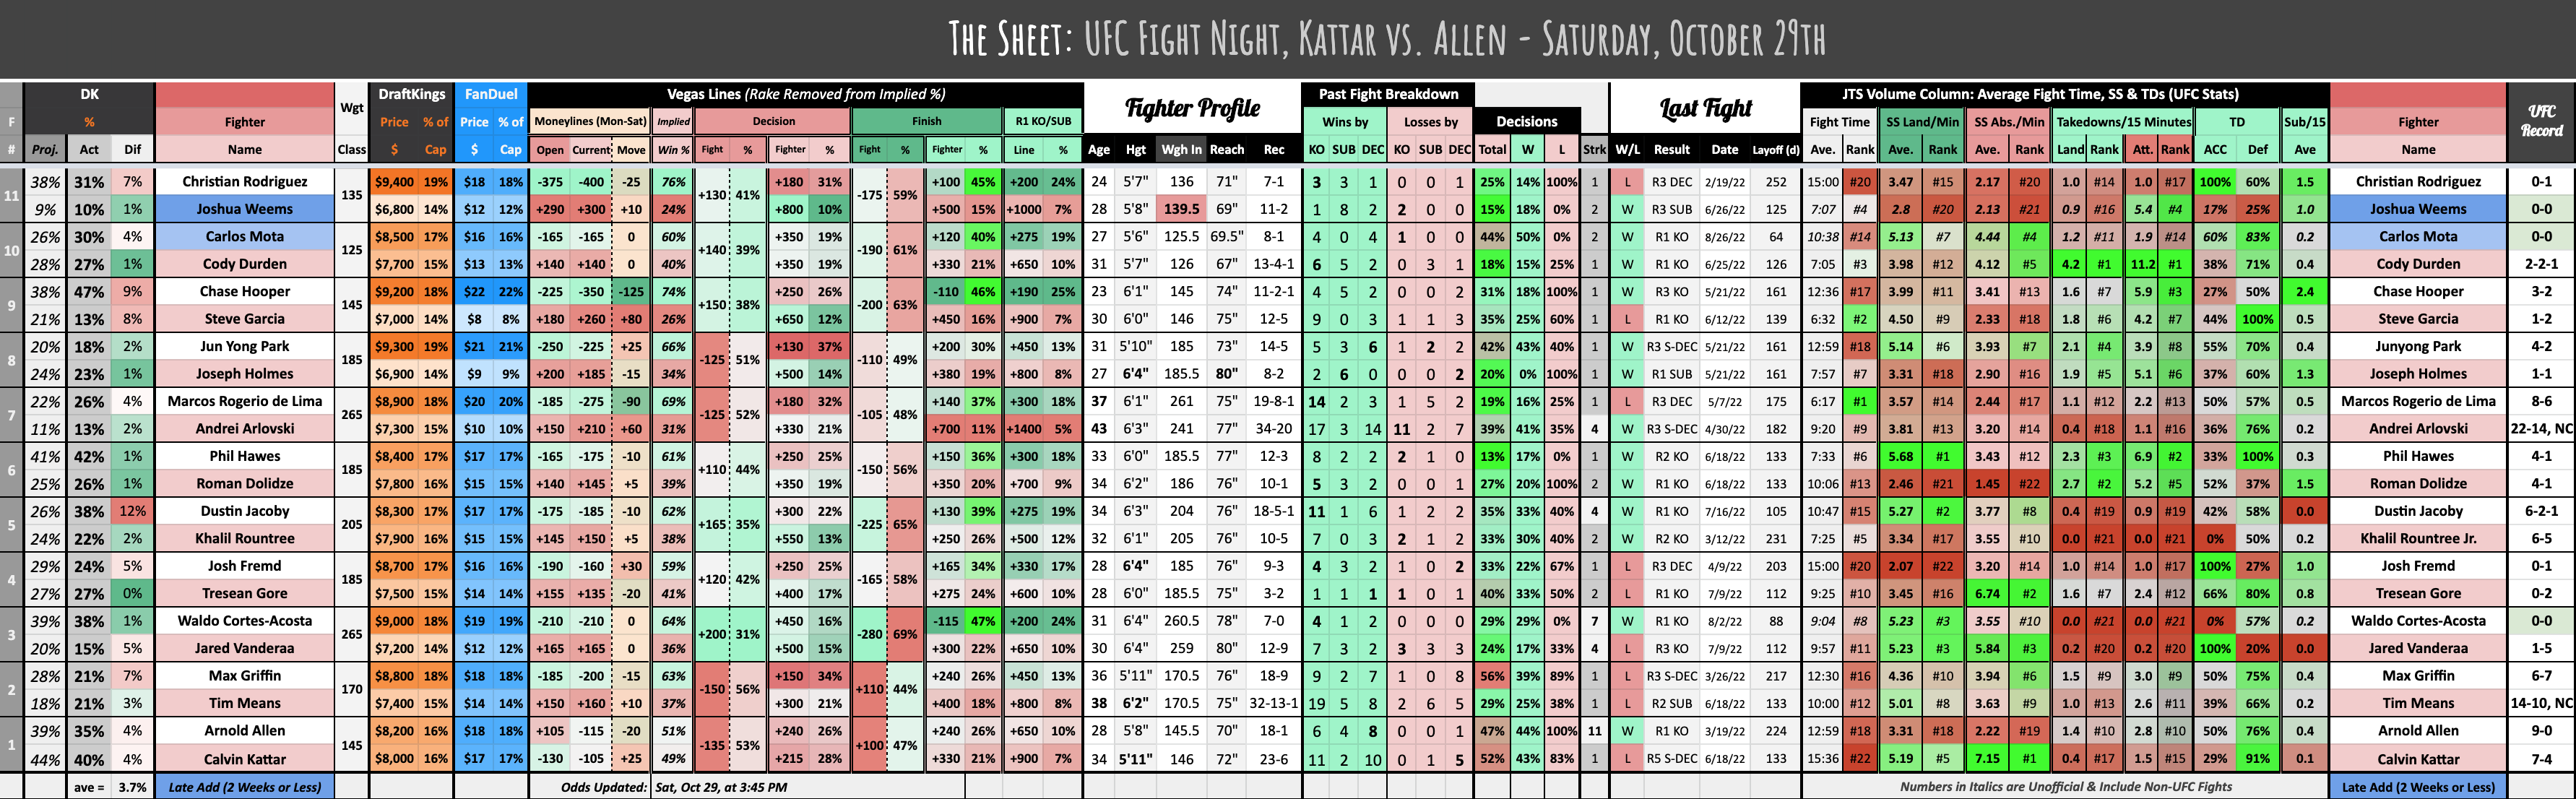 UFC Fight Night, Kattar vs. Allen - Saturday, October 29th